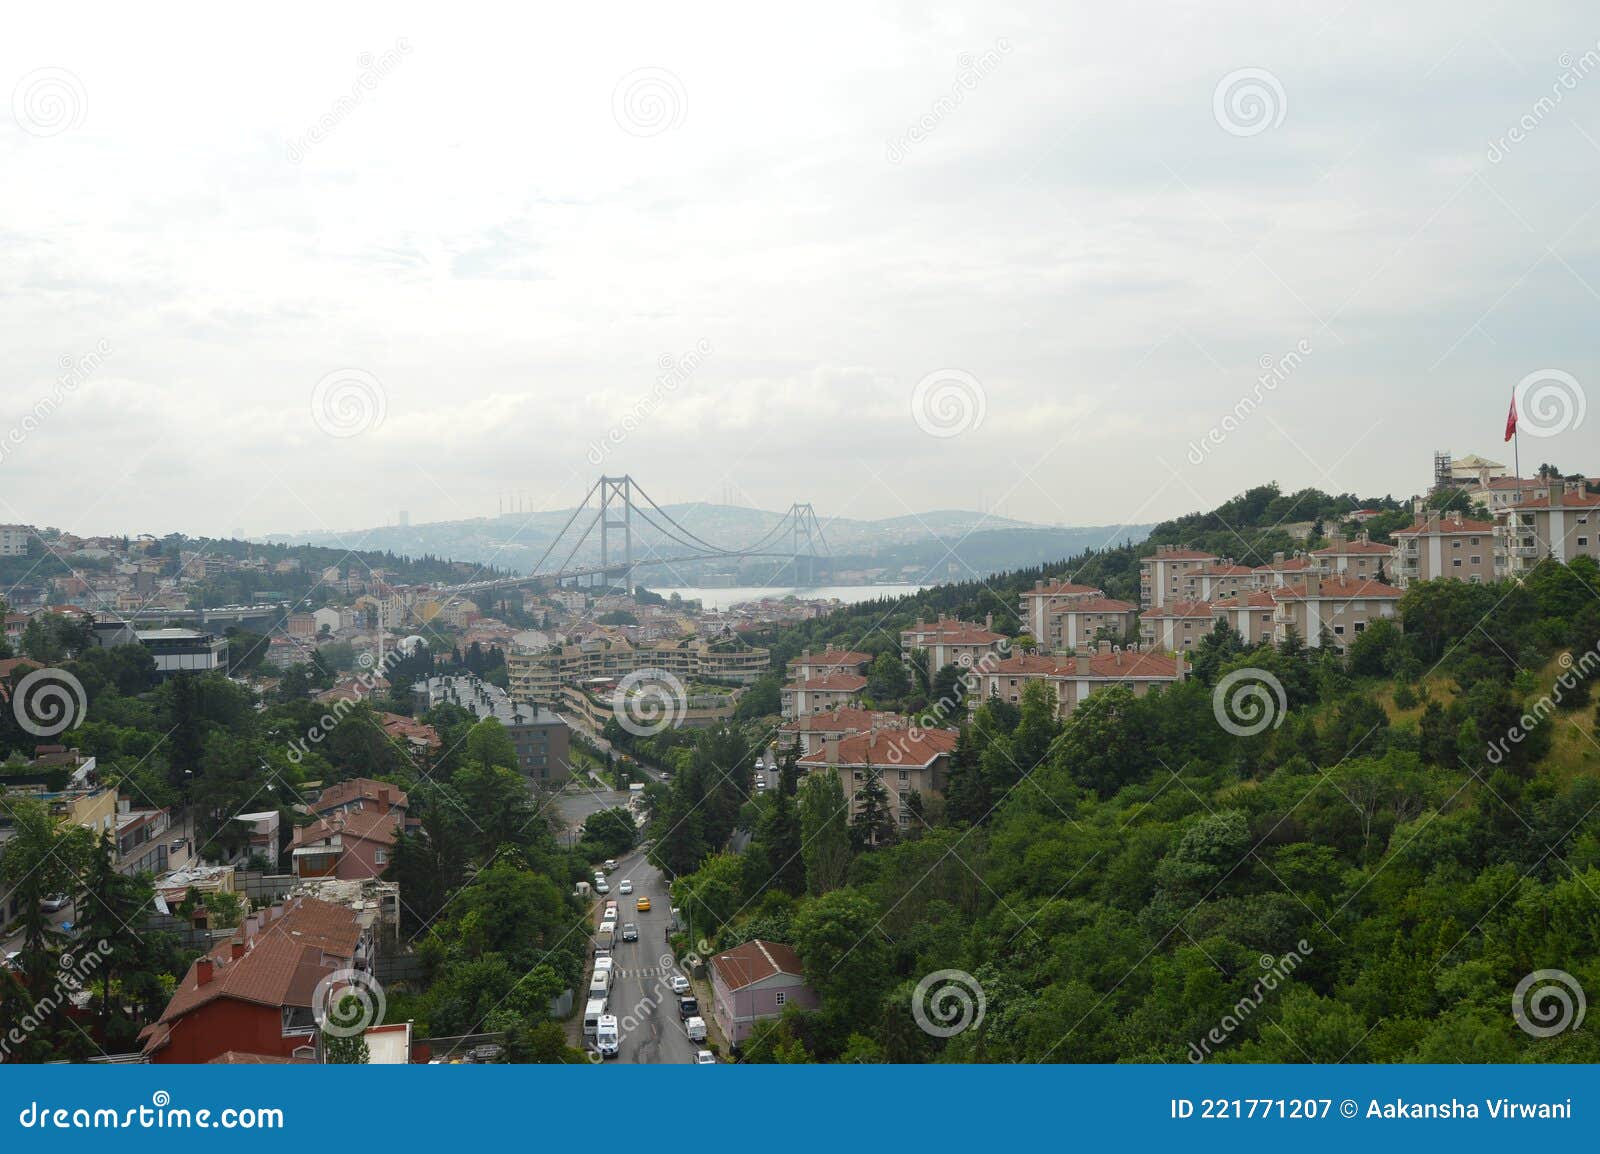 istanbulÃ¢â¬â¢s bosphorus bridge with city view